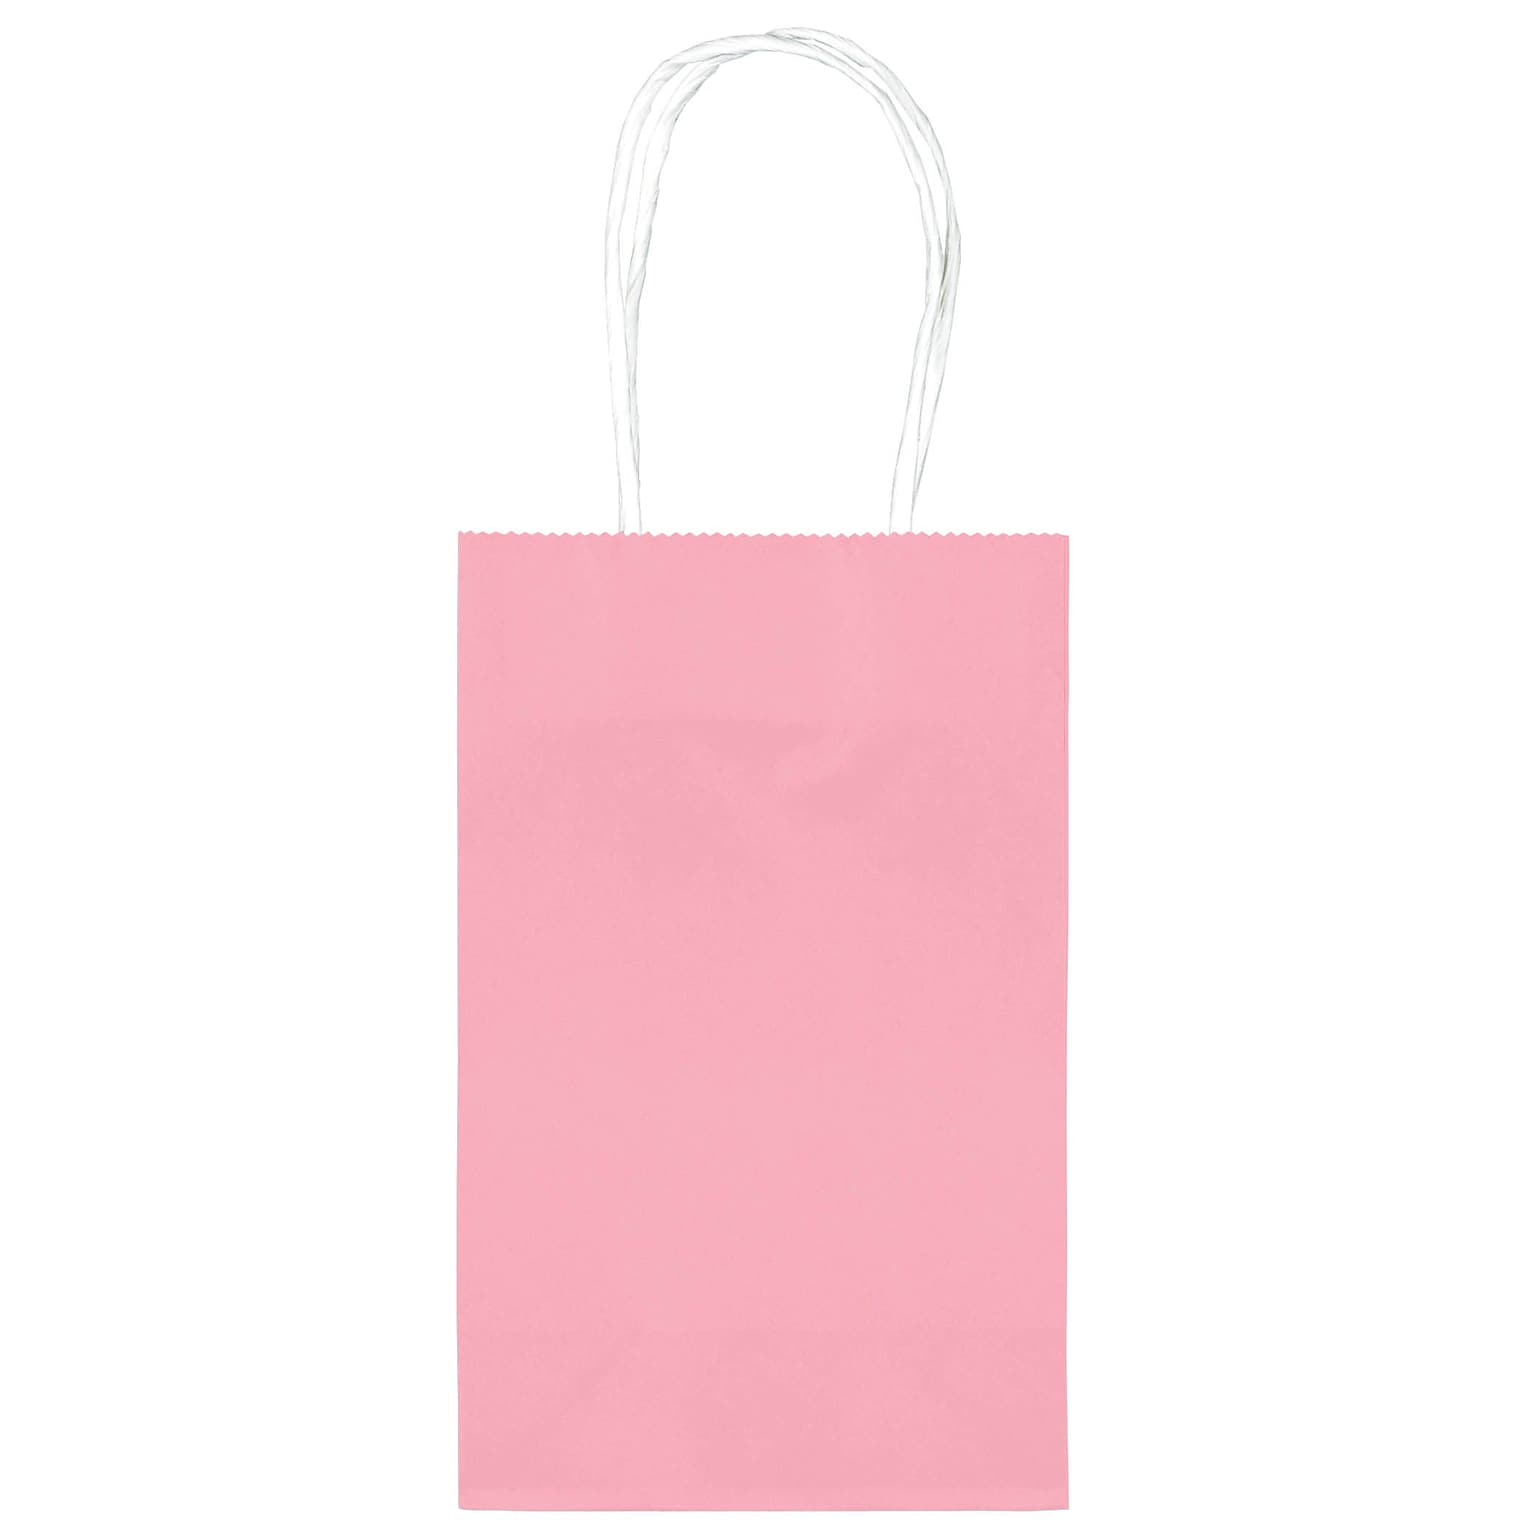 Amscan Kraft Paper Bag, 8.25 x 5.25, New Pink, 4/Pack, 10 Bags/Pack (162500.109)